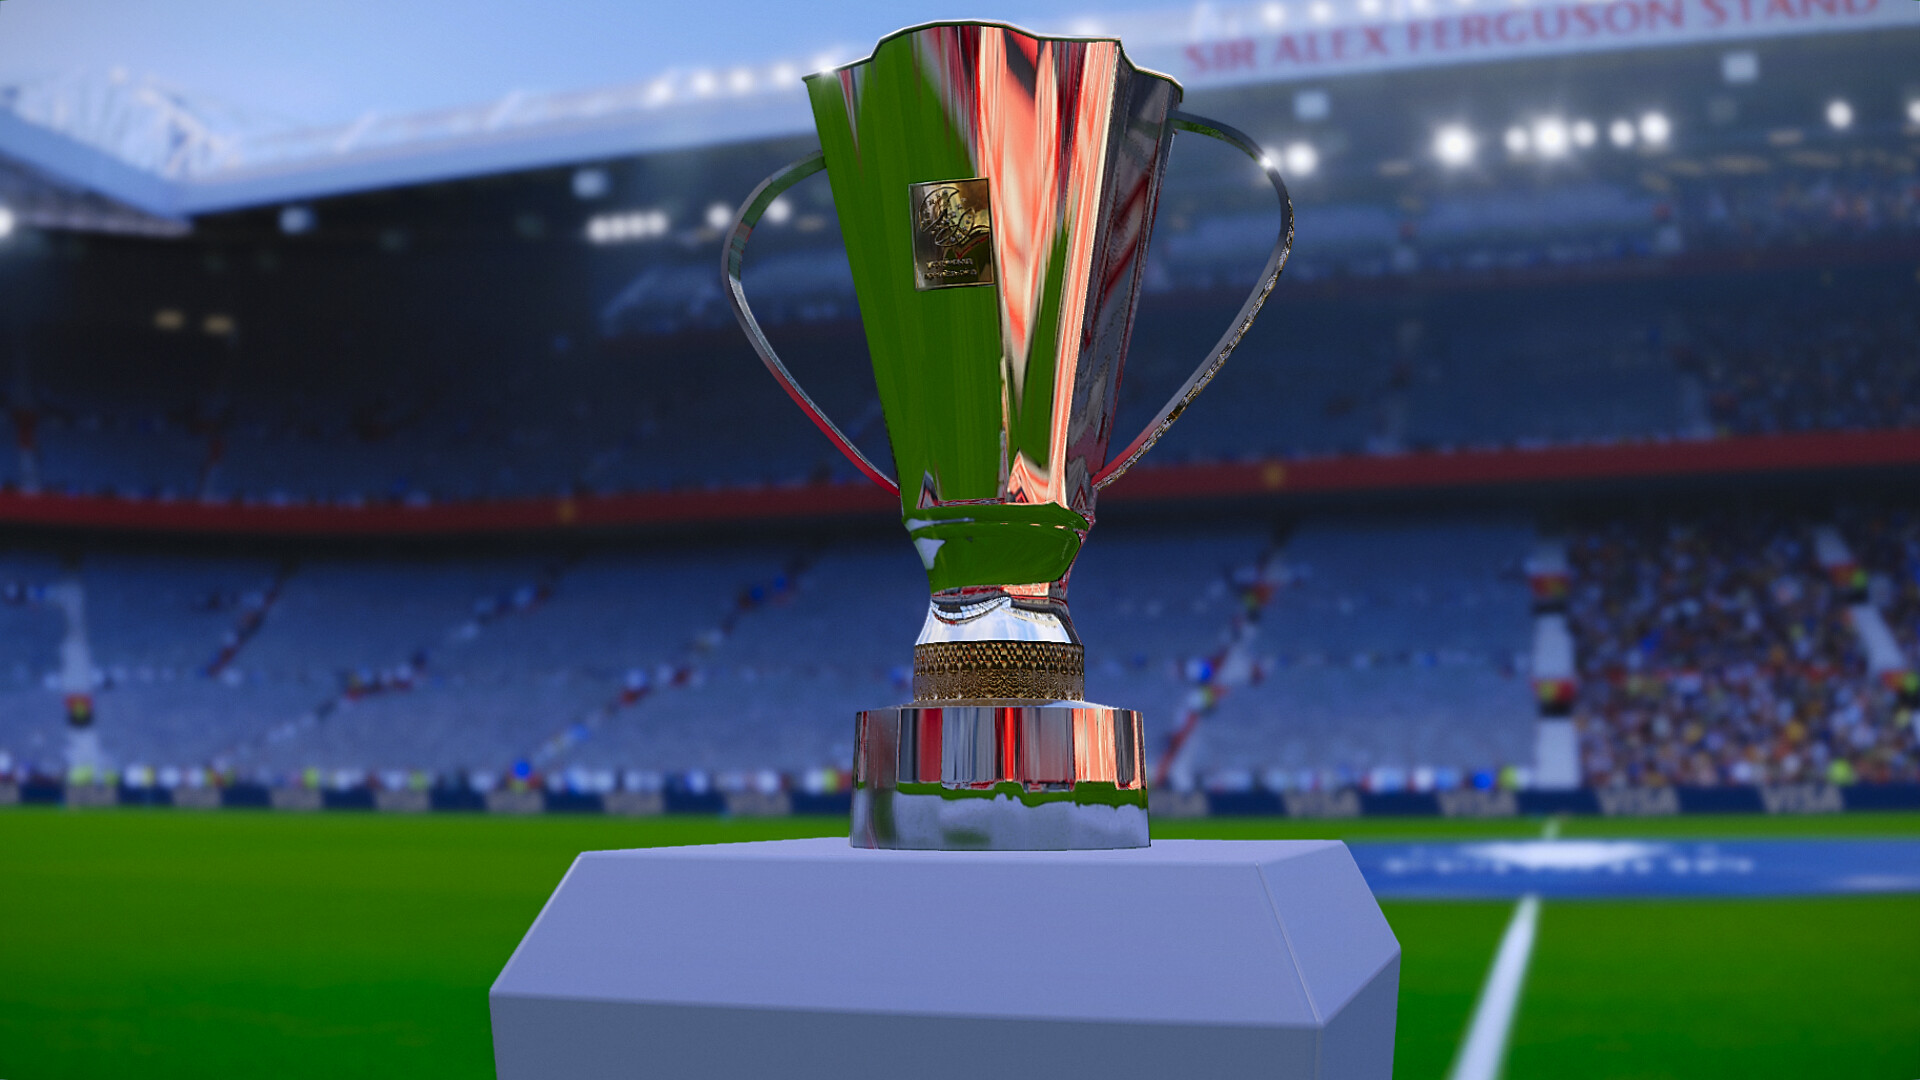 ArtStation - KNVB Beker 3D trophy for PES 2020/21